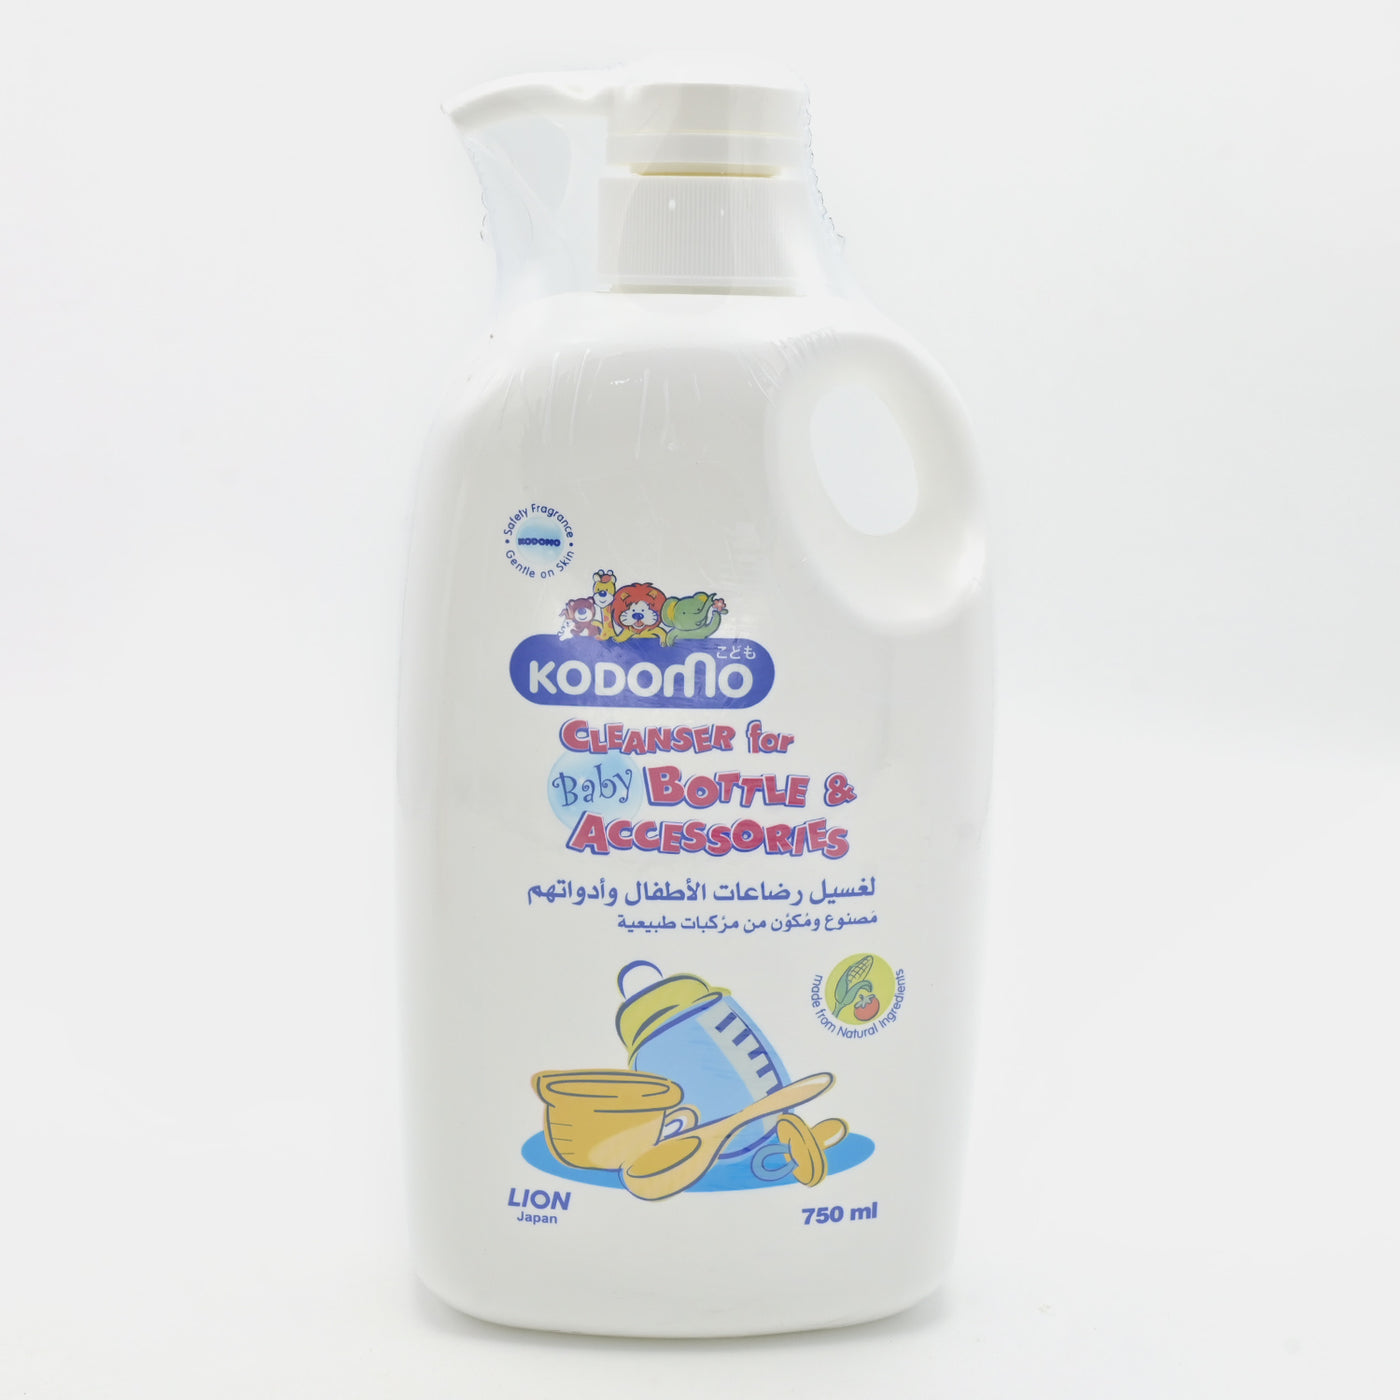 Kodomo 750ml Baby Bottle & Accessories Cleanser